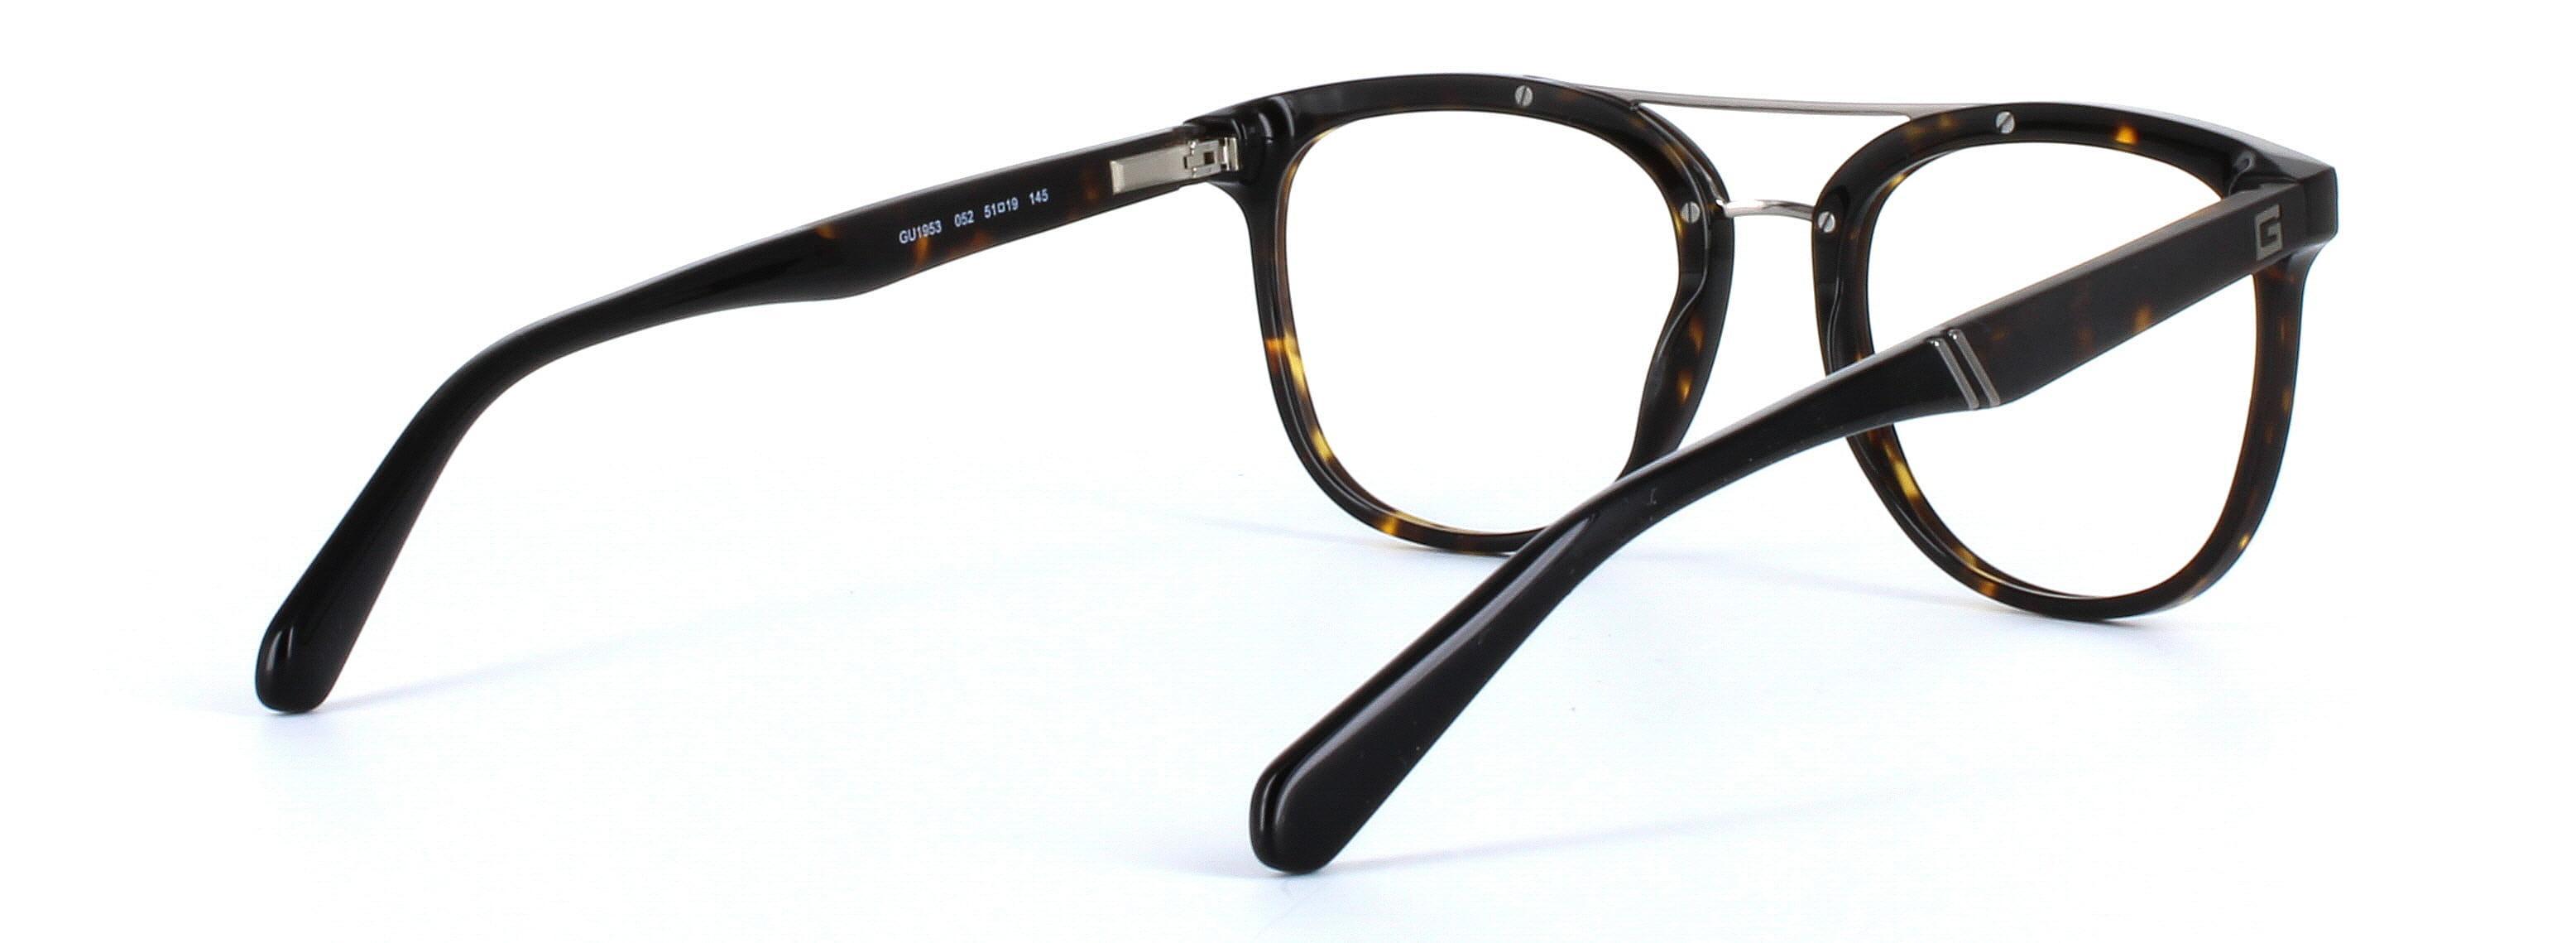 GUESS (GU1953-052) Brown Full Rim Square Acetate Glasses - Image View 4